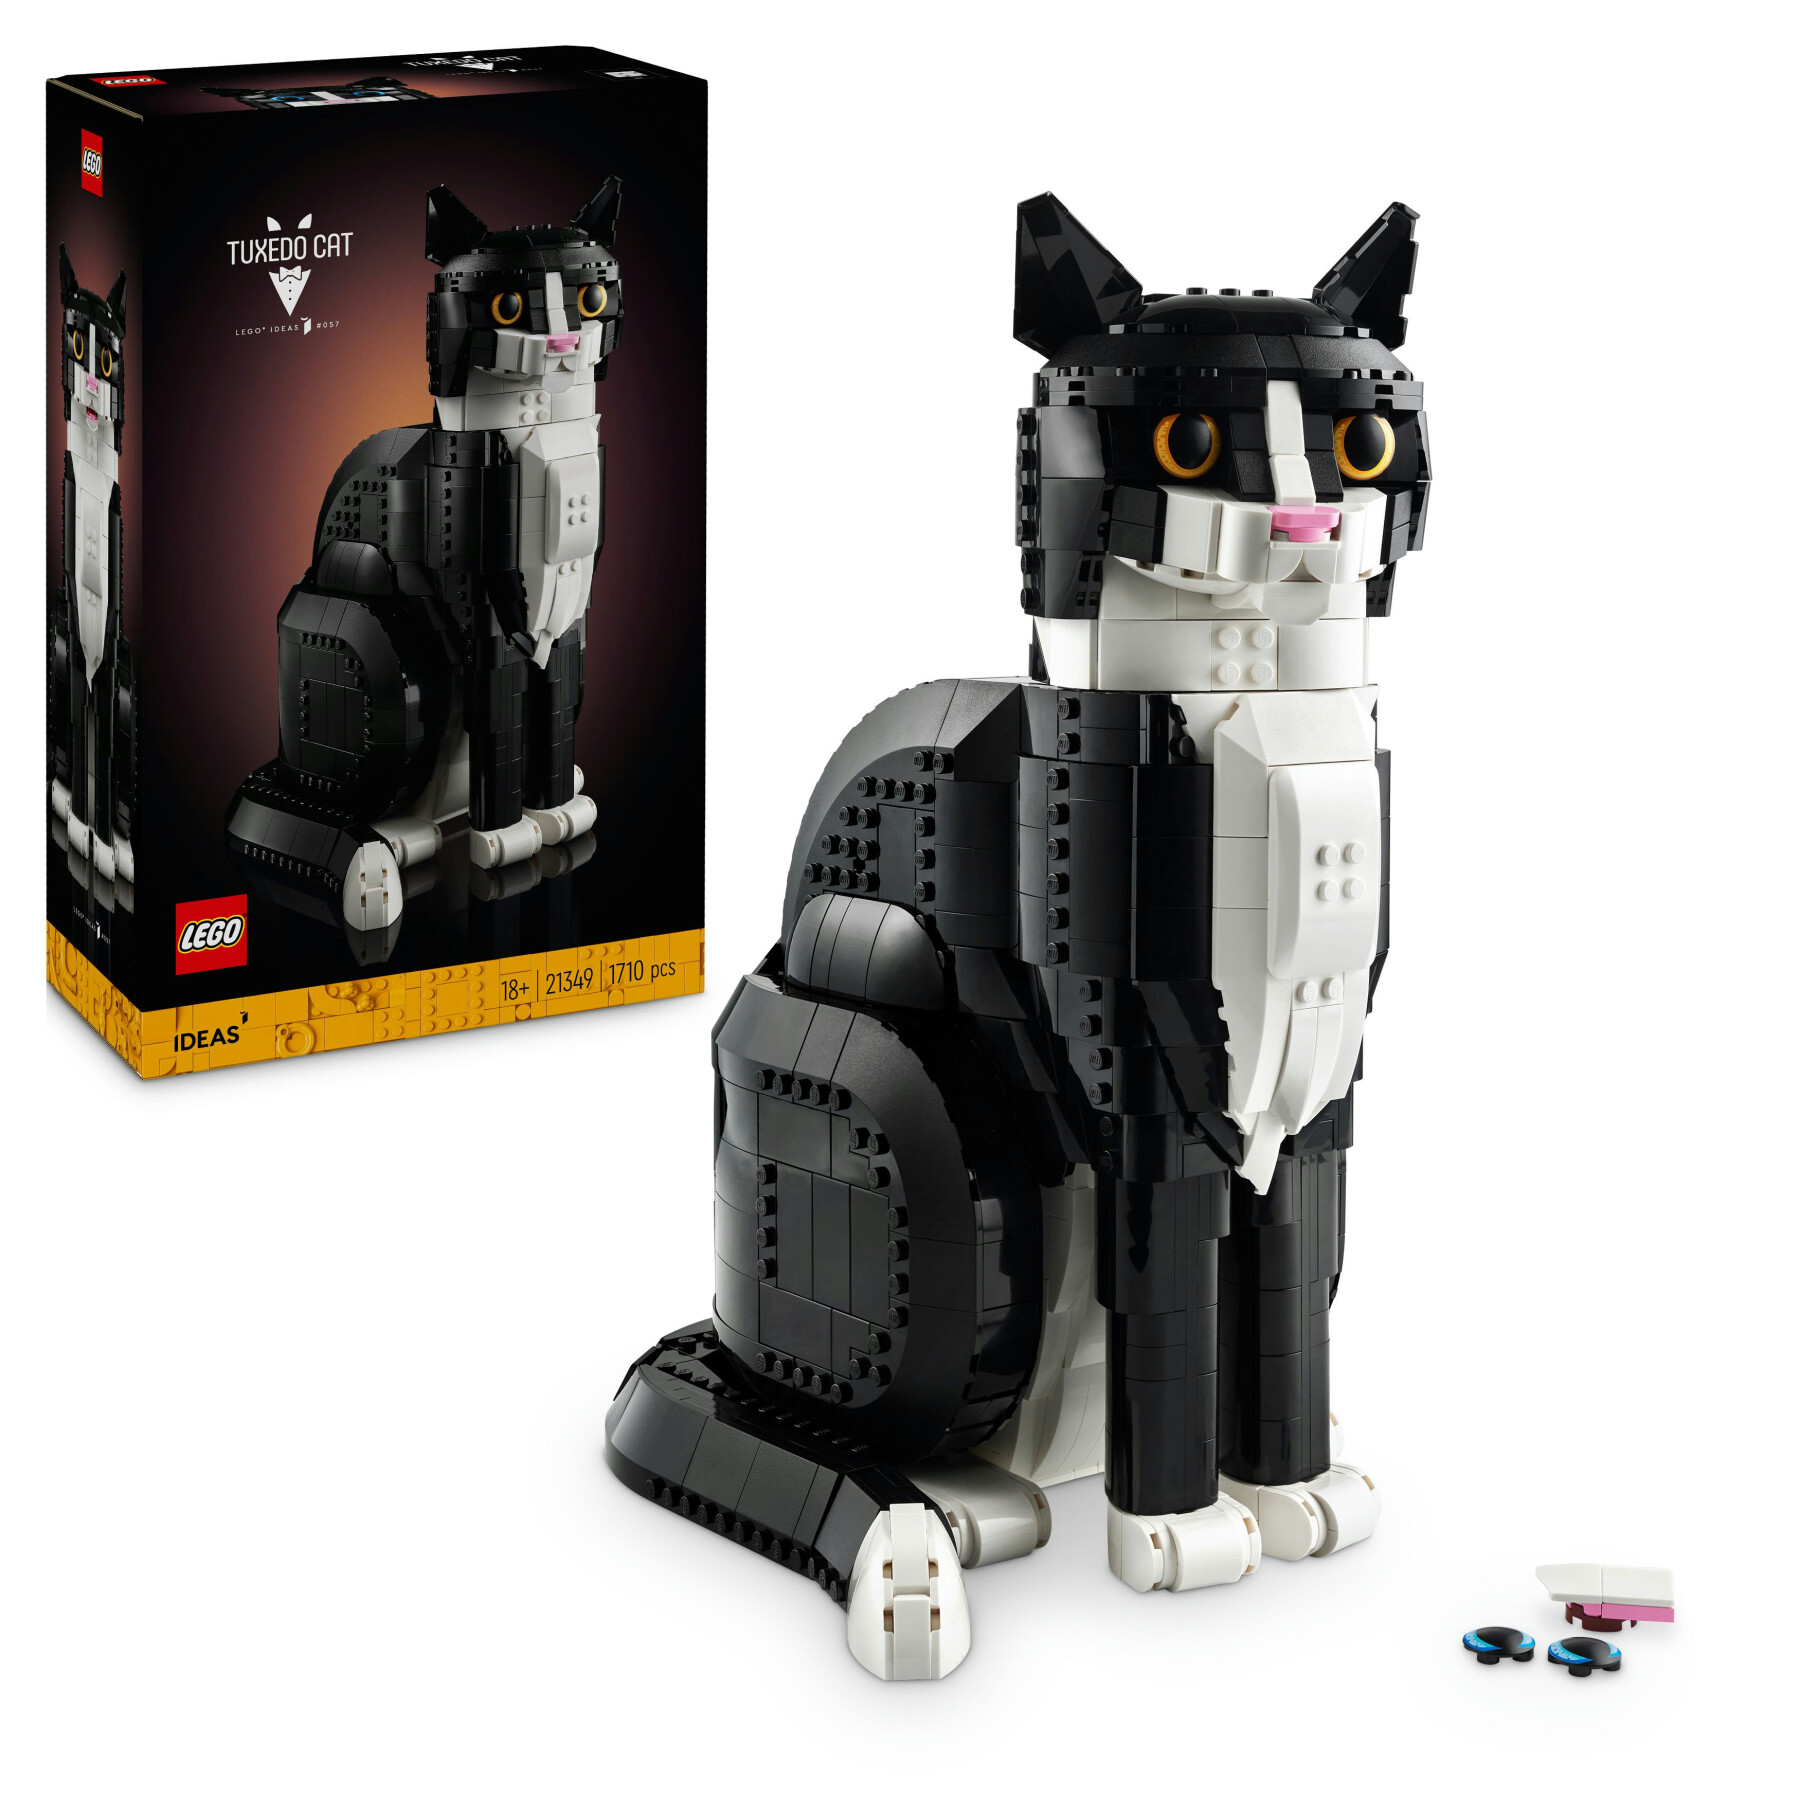 Lego ideas 21349 gatto tuxedo, kit di costruzione per adulti da collezione, idea regalo per lui o lei, decorazione per casa - LEGO IDEAS